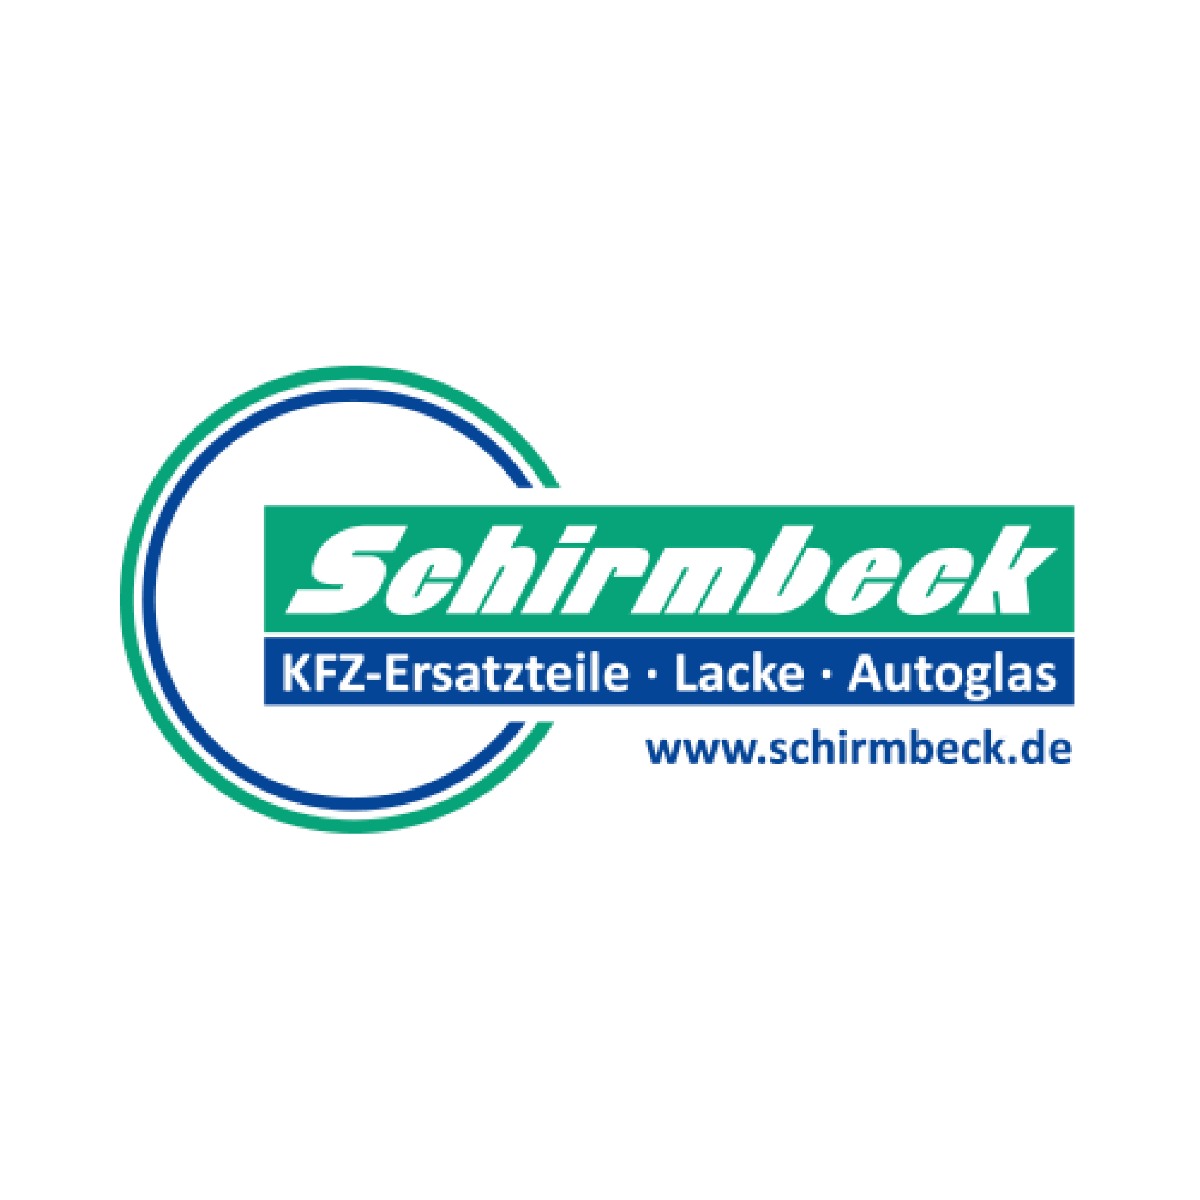 Johann Schirmbeck GmbH KFZ-Ersatzteile